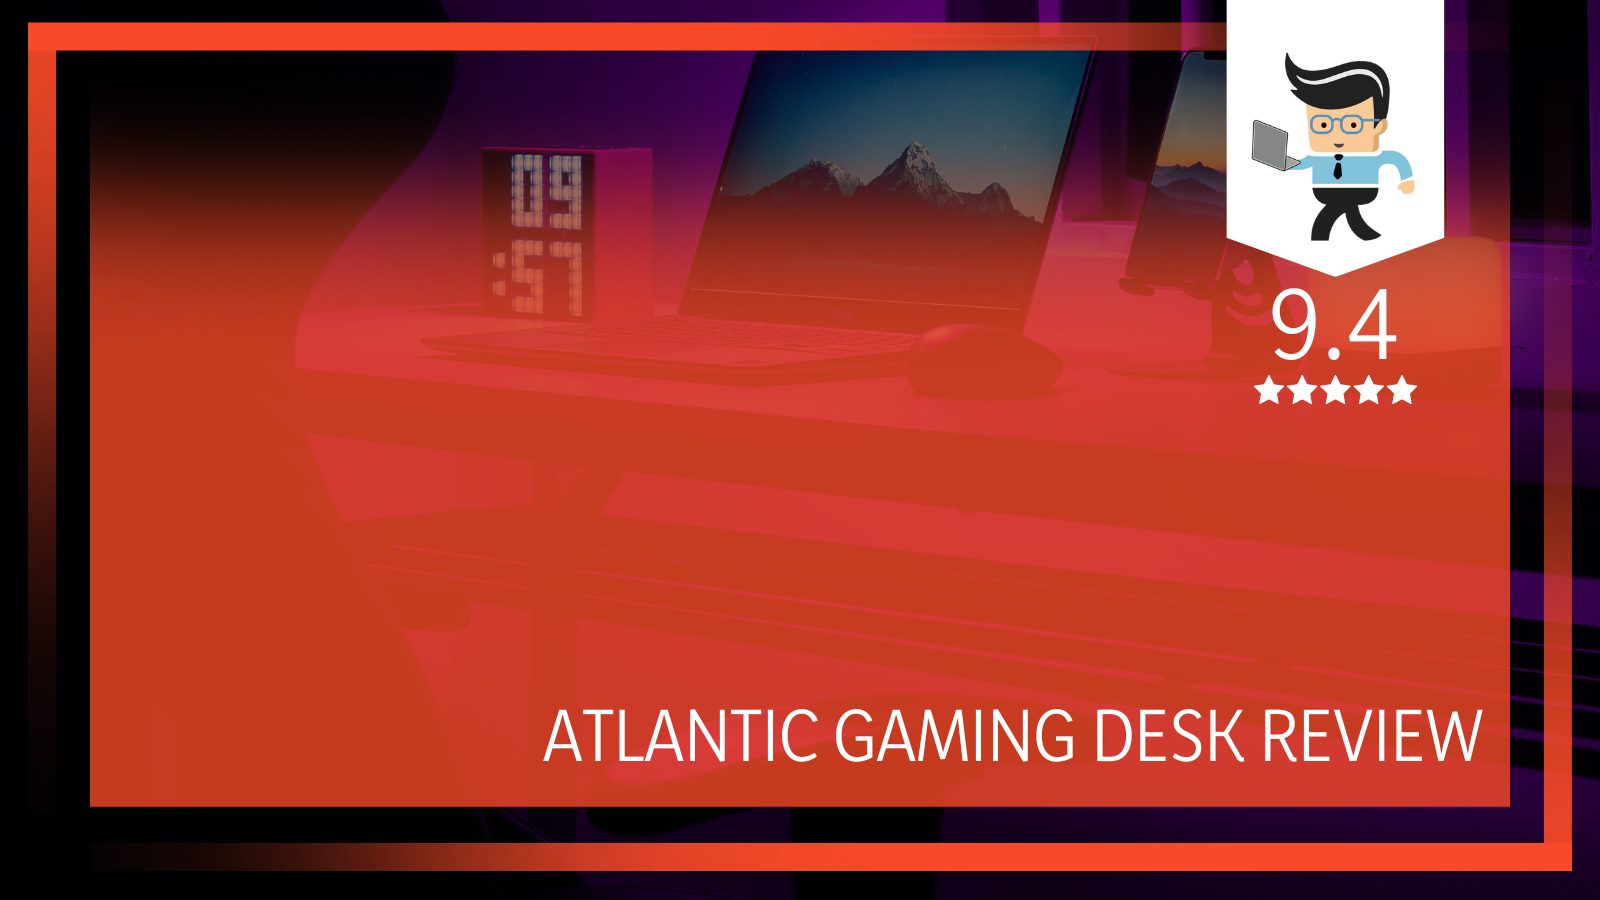 Atlantic Gaming Desk Review